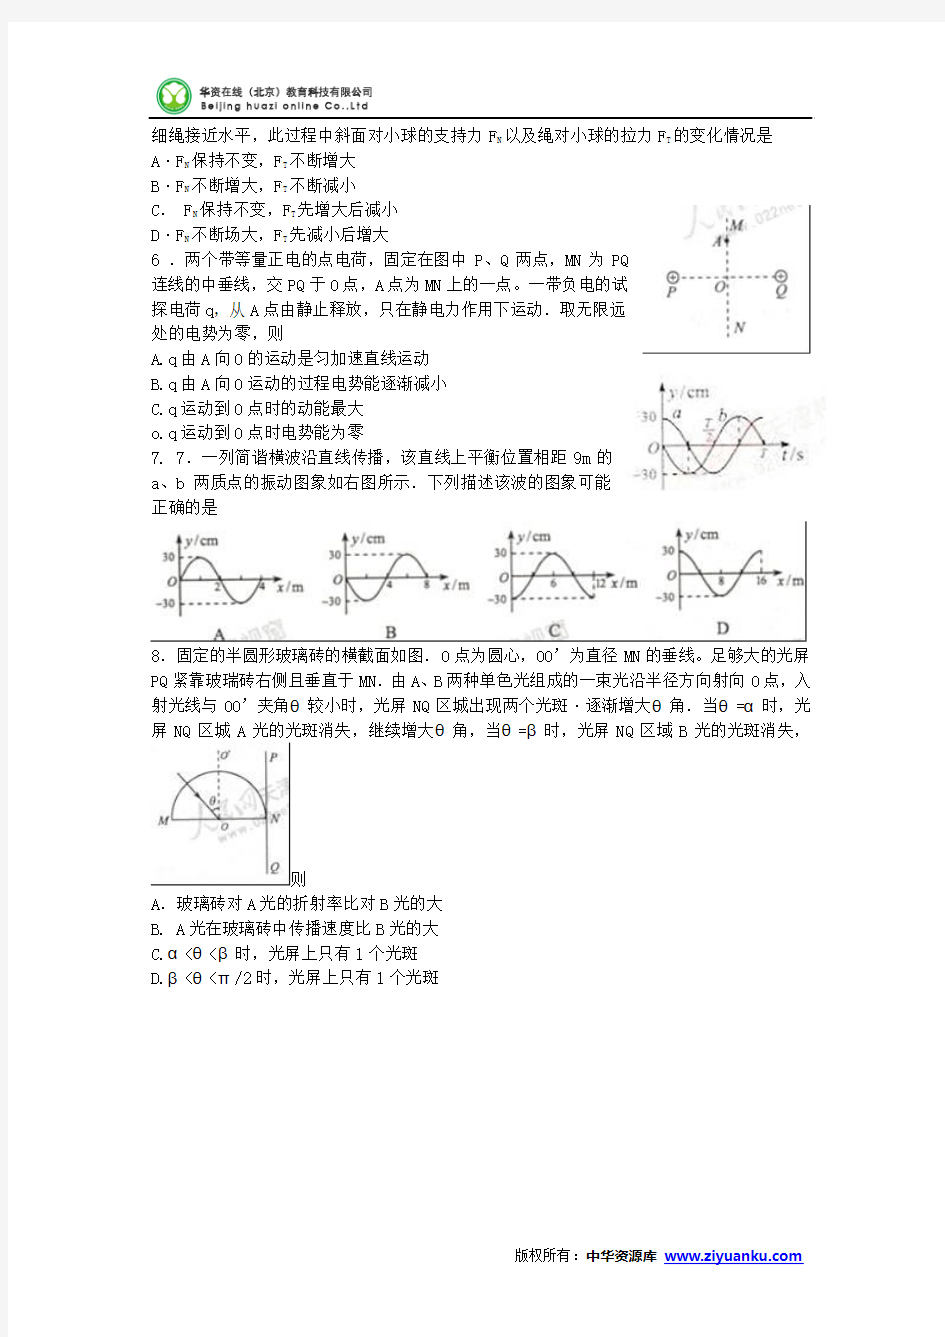 2013年高考真题——理综物理(天津卷) Word版含答案